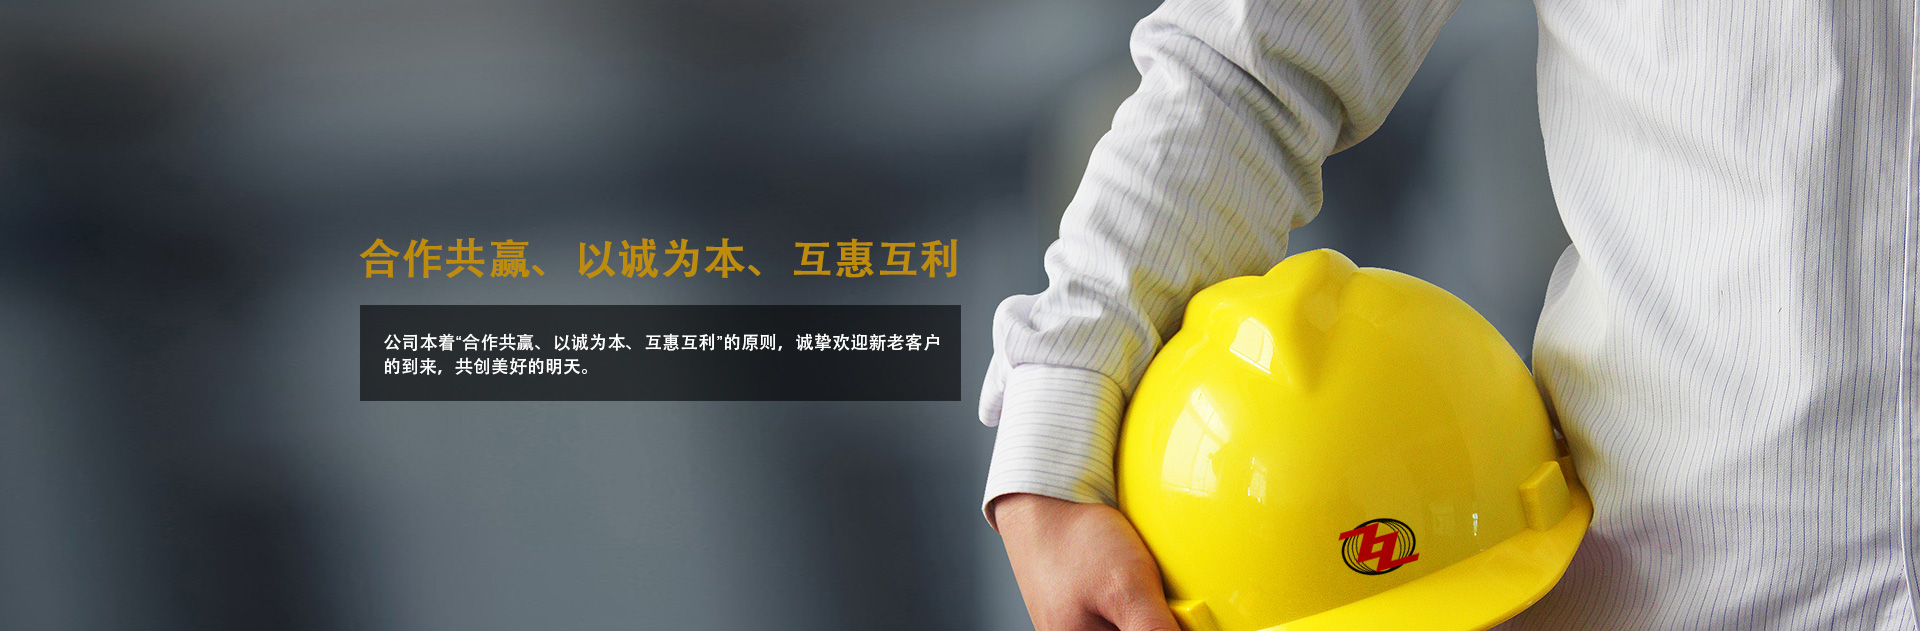 关于当前产品3162十年棋牌在线登录·(中国)官方网站的成功案例等相关图片